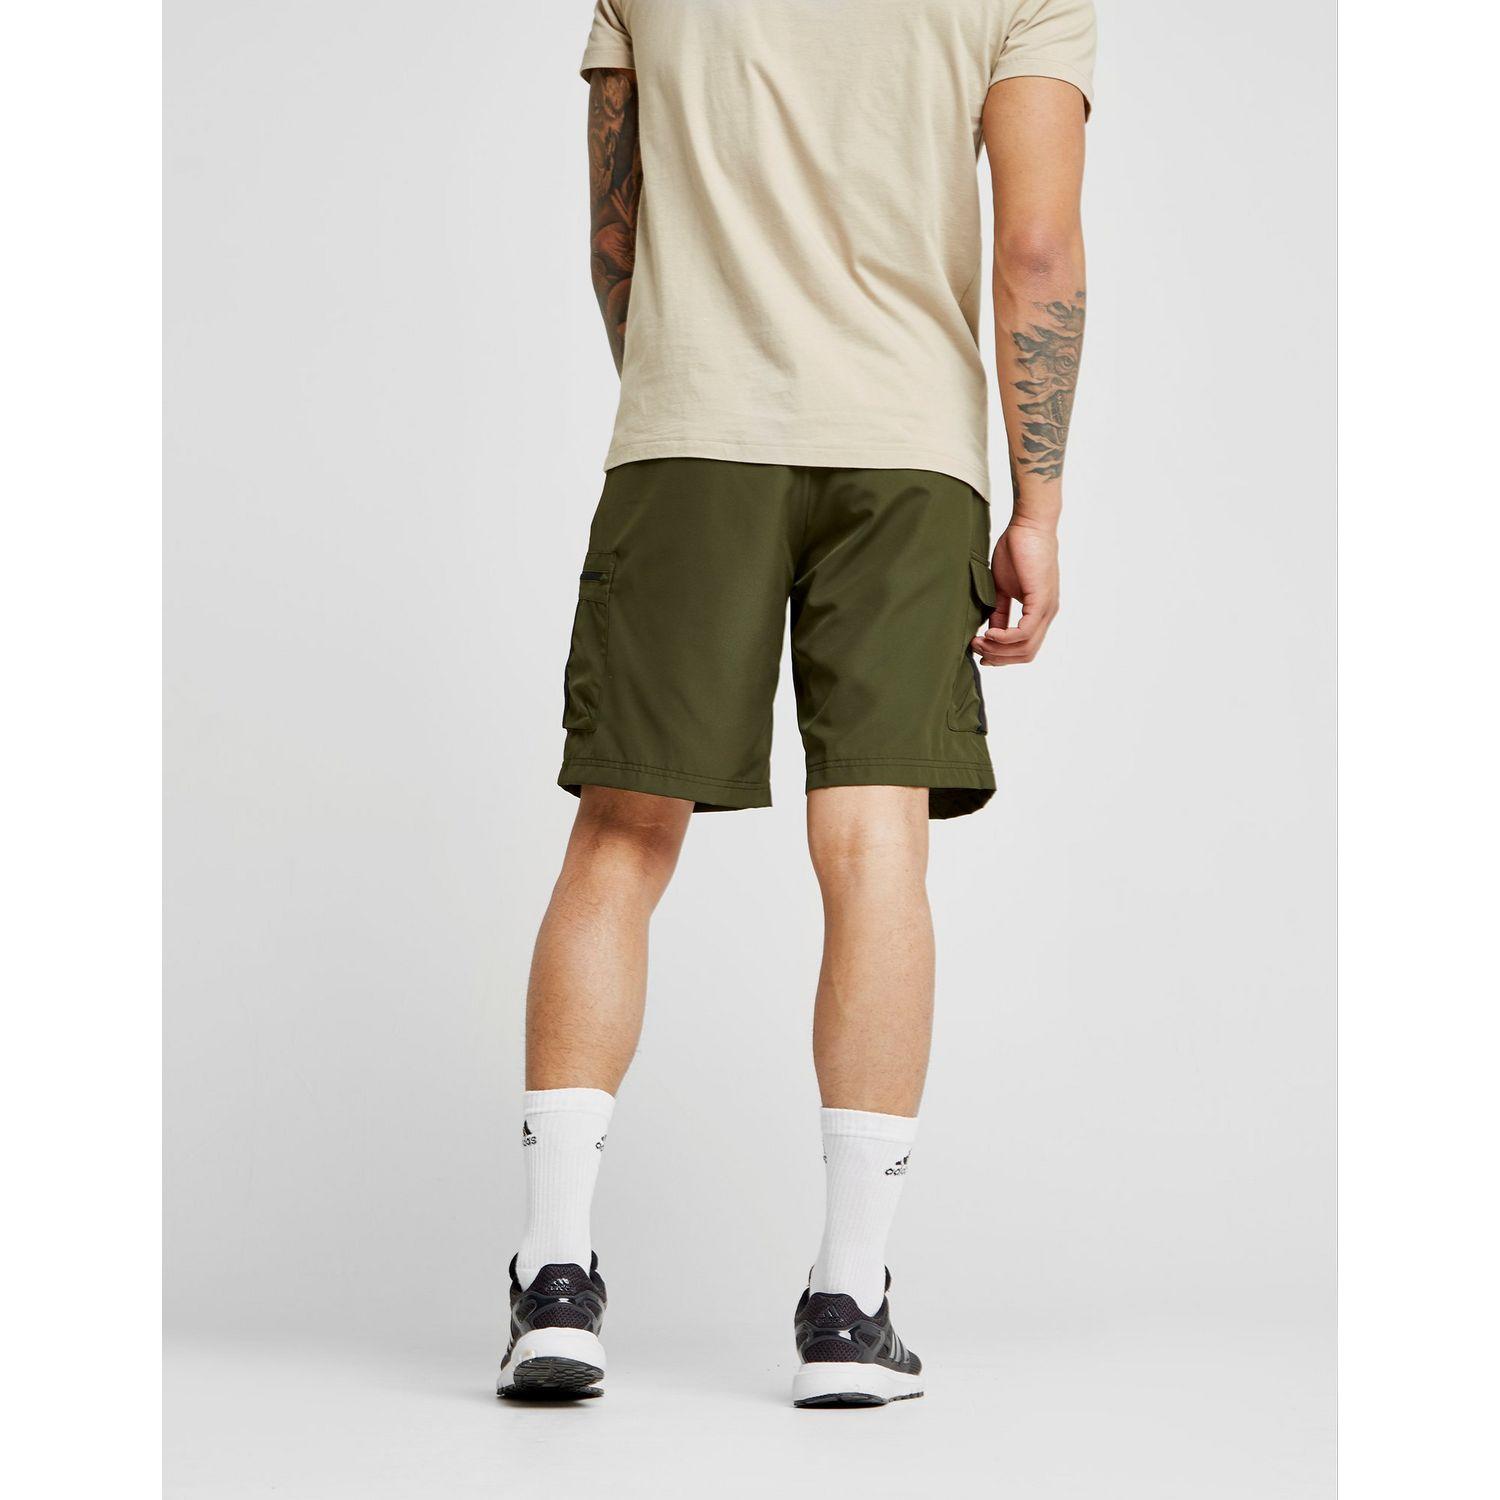 adidas cargo shorts green